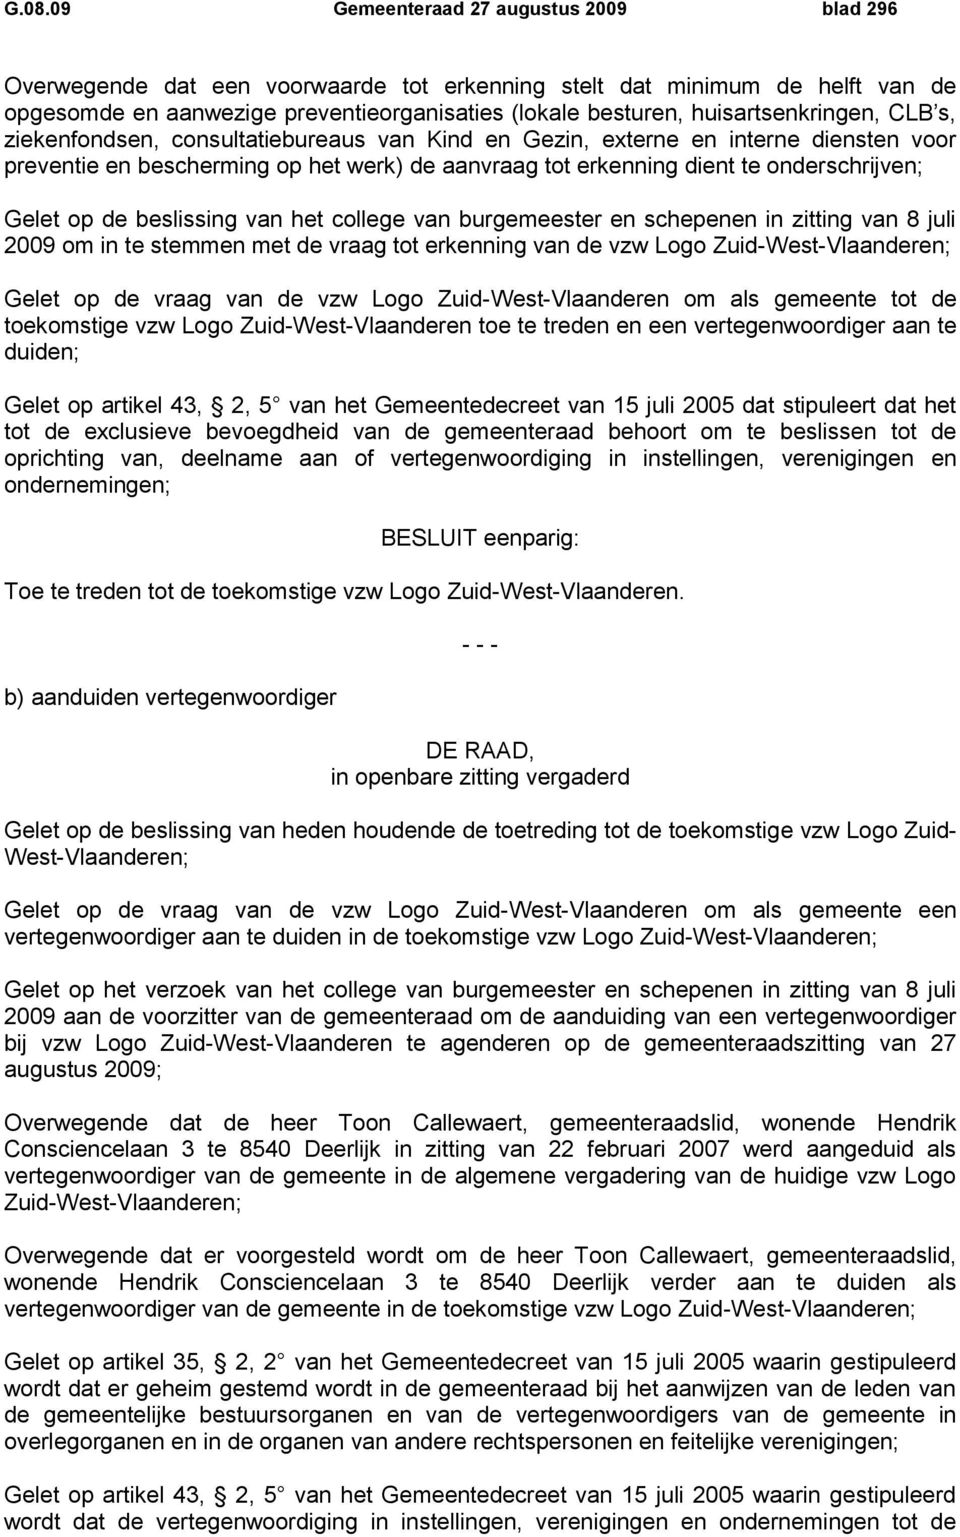 onderschrijven; Gelet op de beslissing van het college van burgemeester en schepenen in zitting van 8 juli 2009 om in te stemmen met de vraag tot erkenning van de vzw Logo Zuid-West-Vlaanderen; Gelet